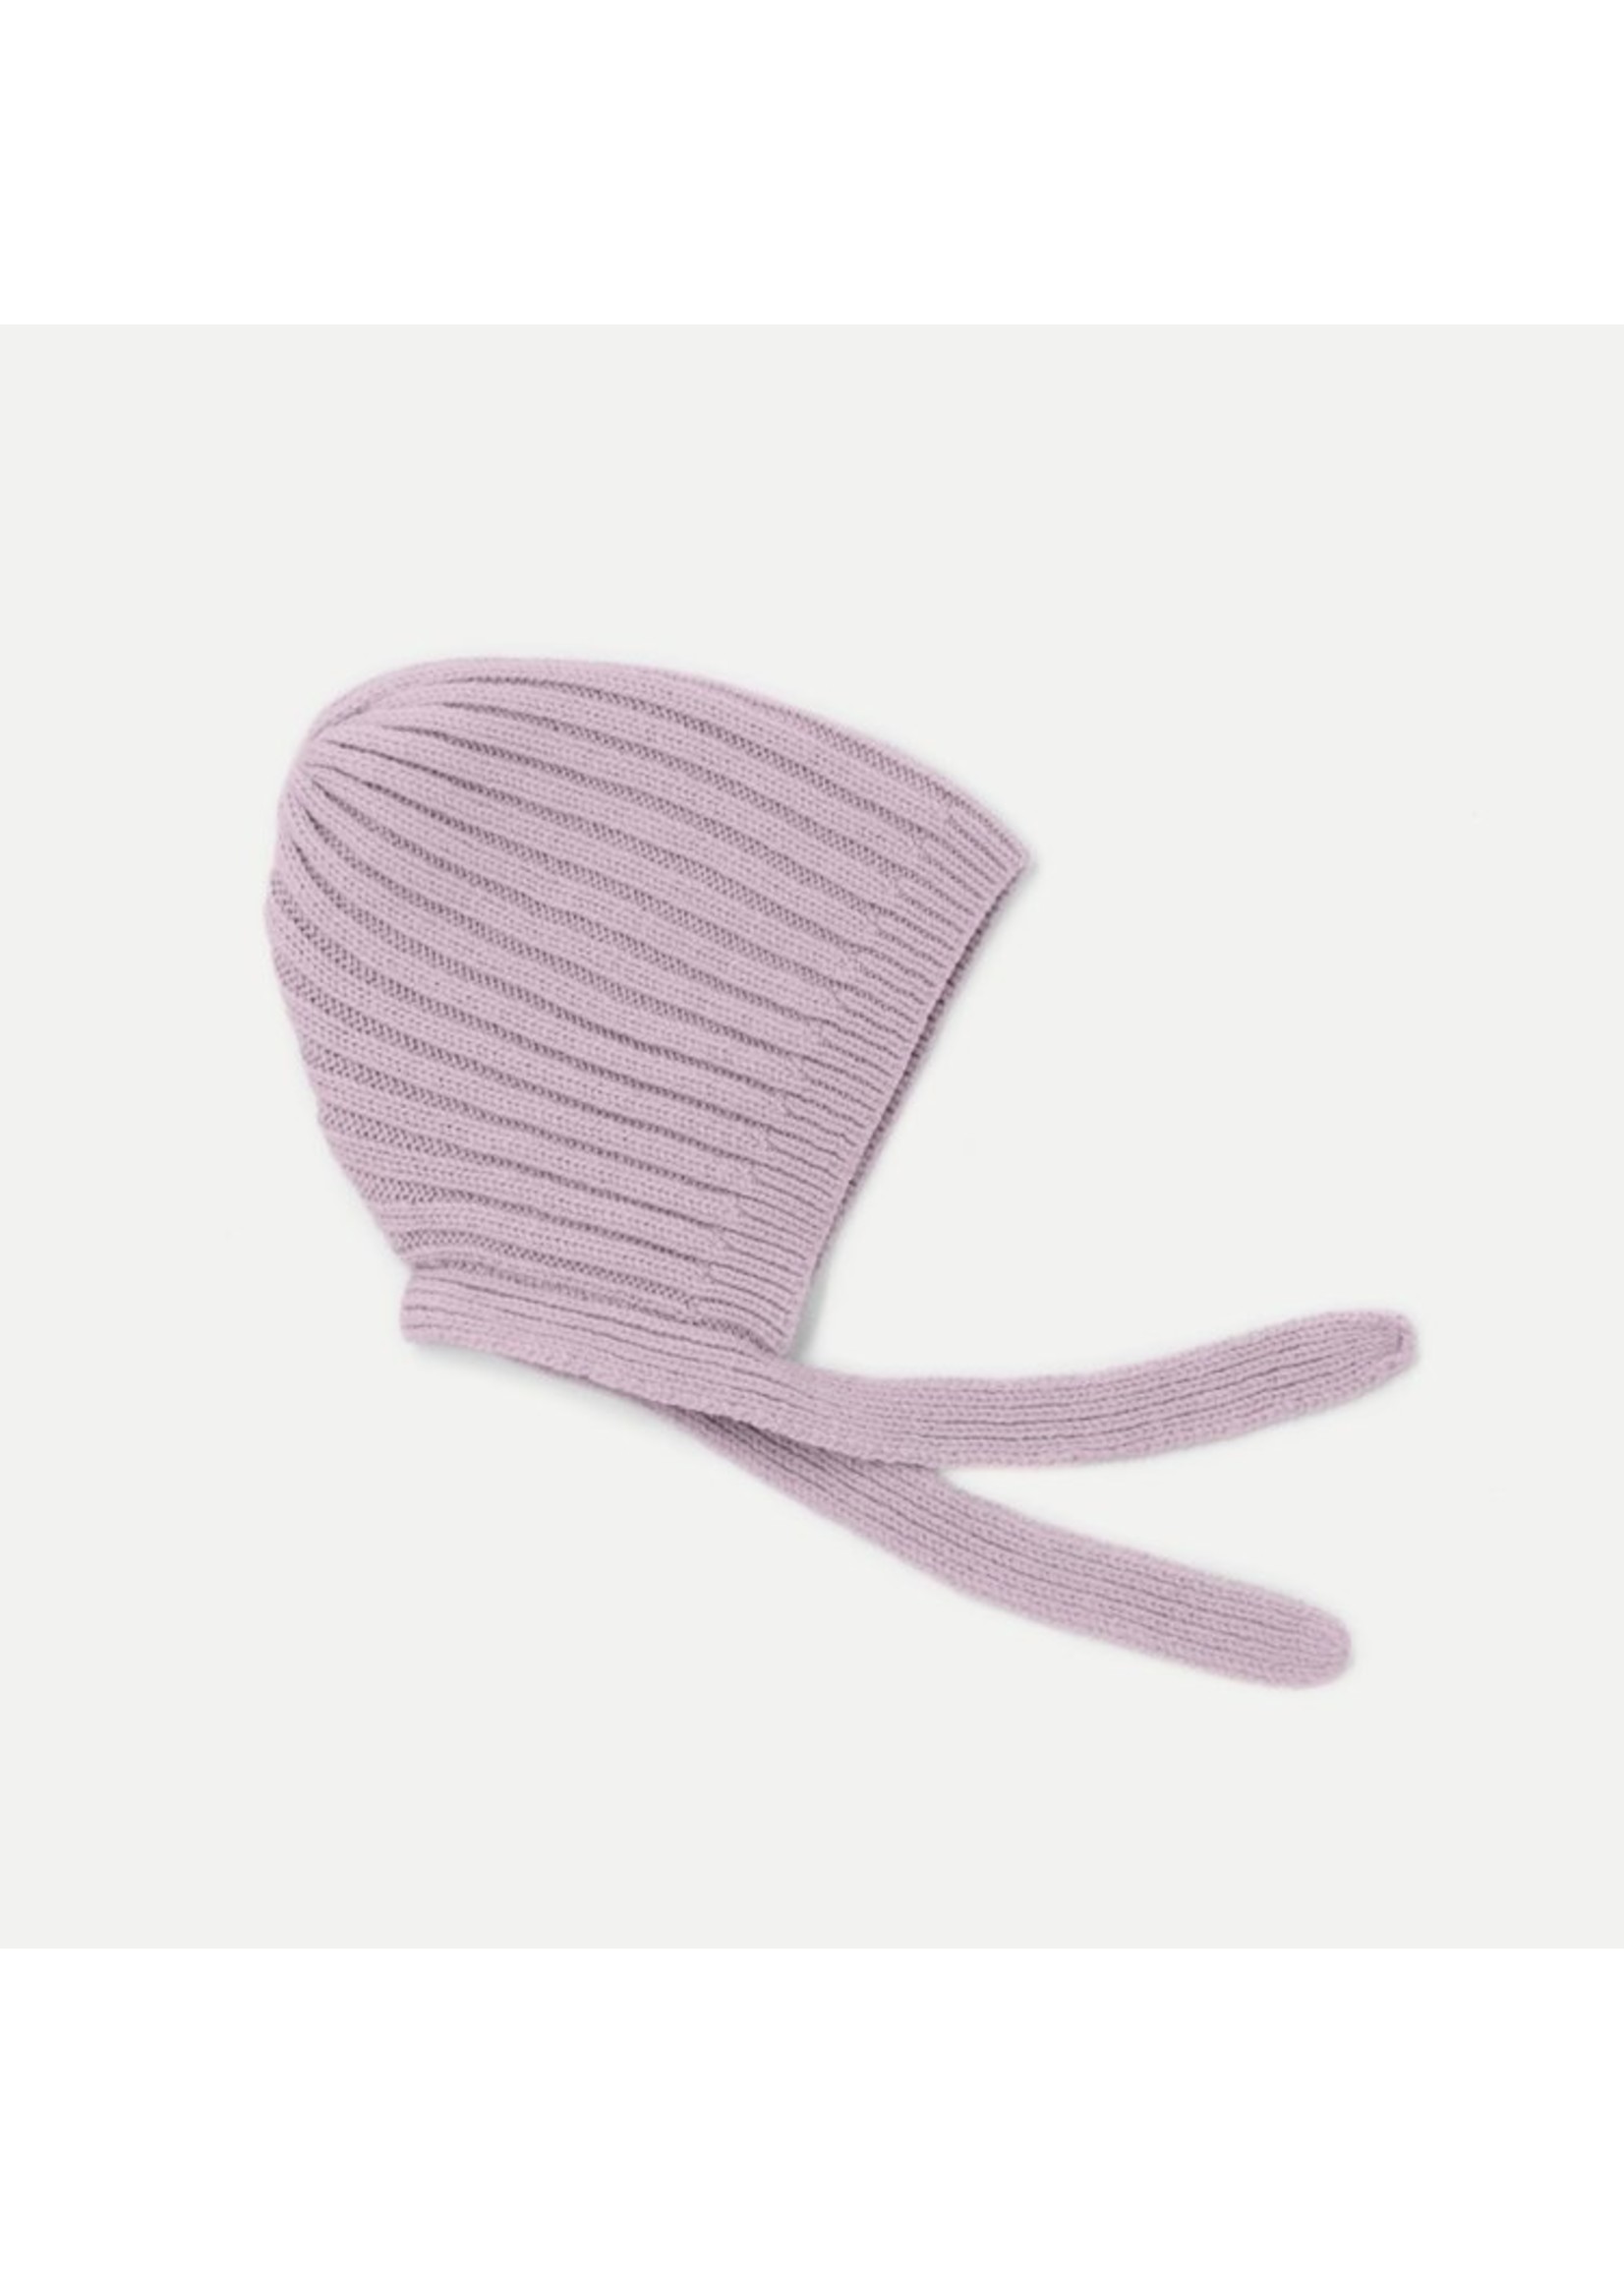 Caribou Wool bonnet for babies